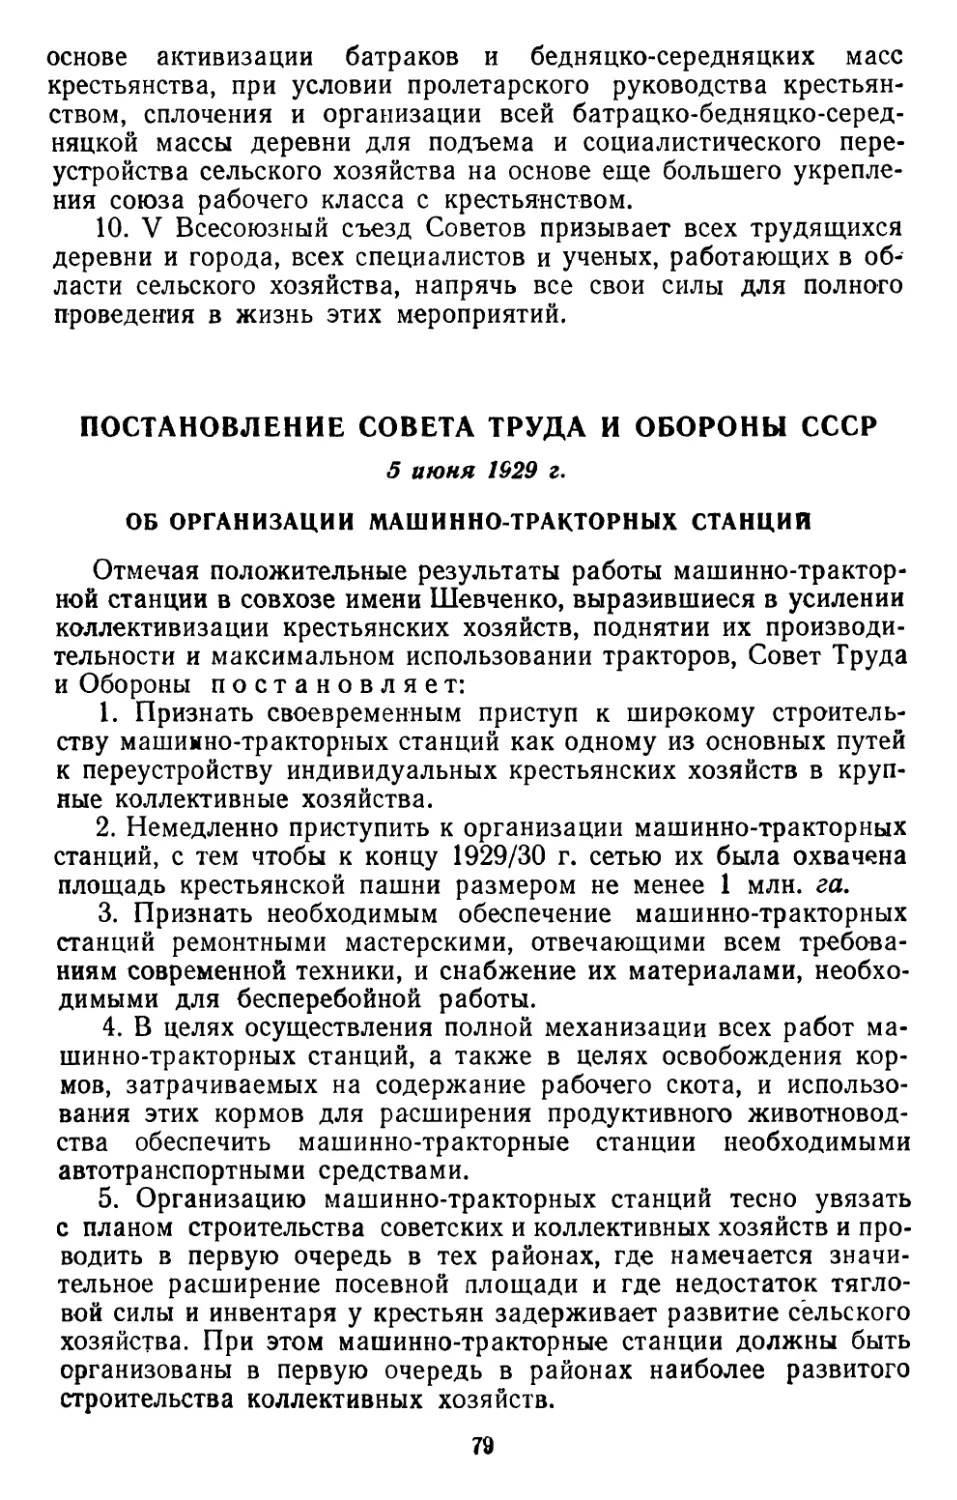 Постановление Совета Труда и Обороны СССР, 5 июня 1929 г. Об организации машинно-тракторных станций